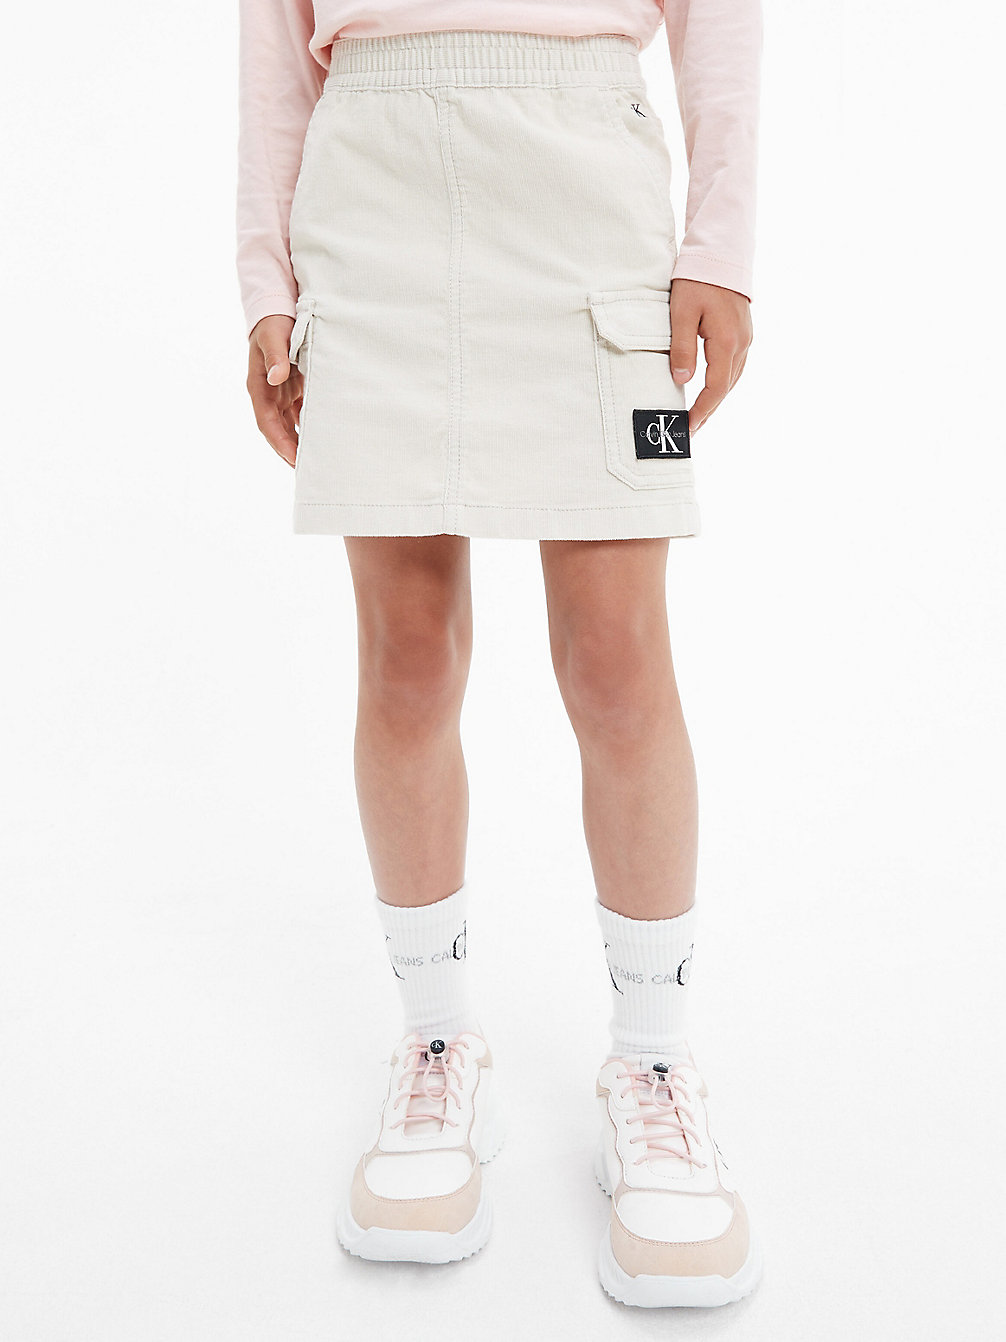 EGGSHELL Corduroy Skirt undefined girls Calvin Klein